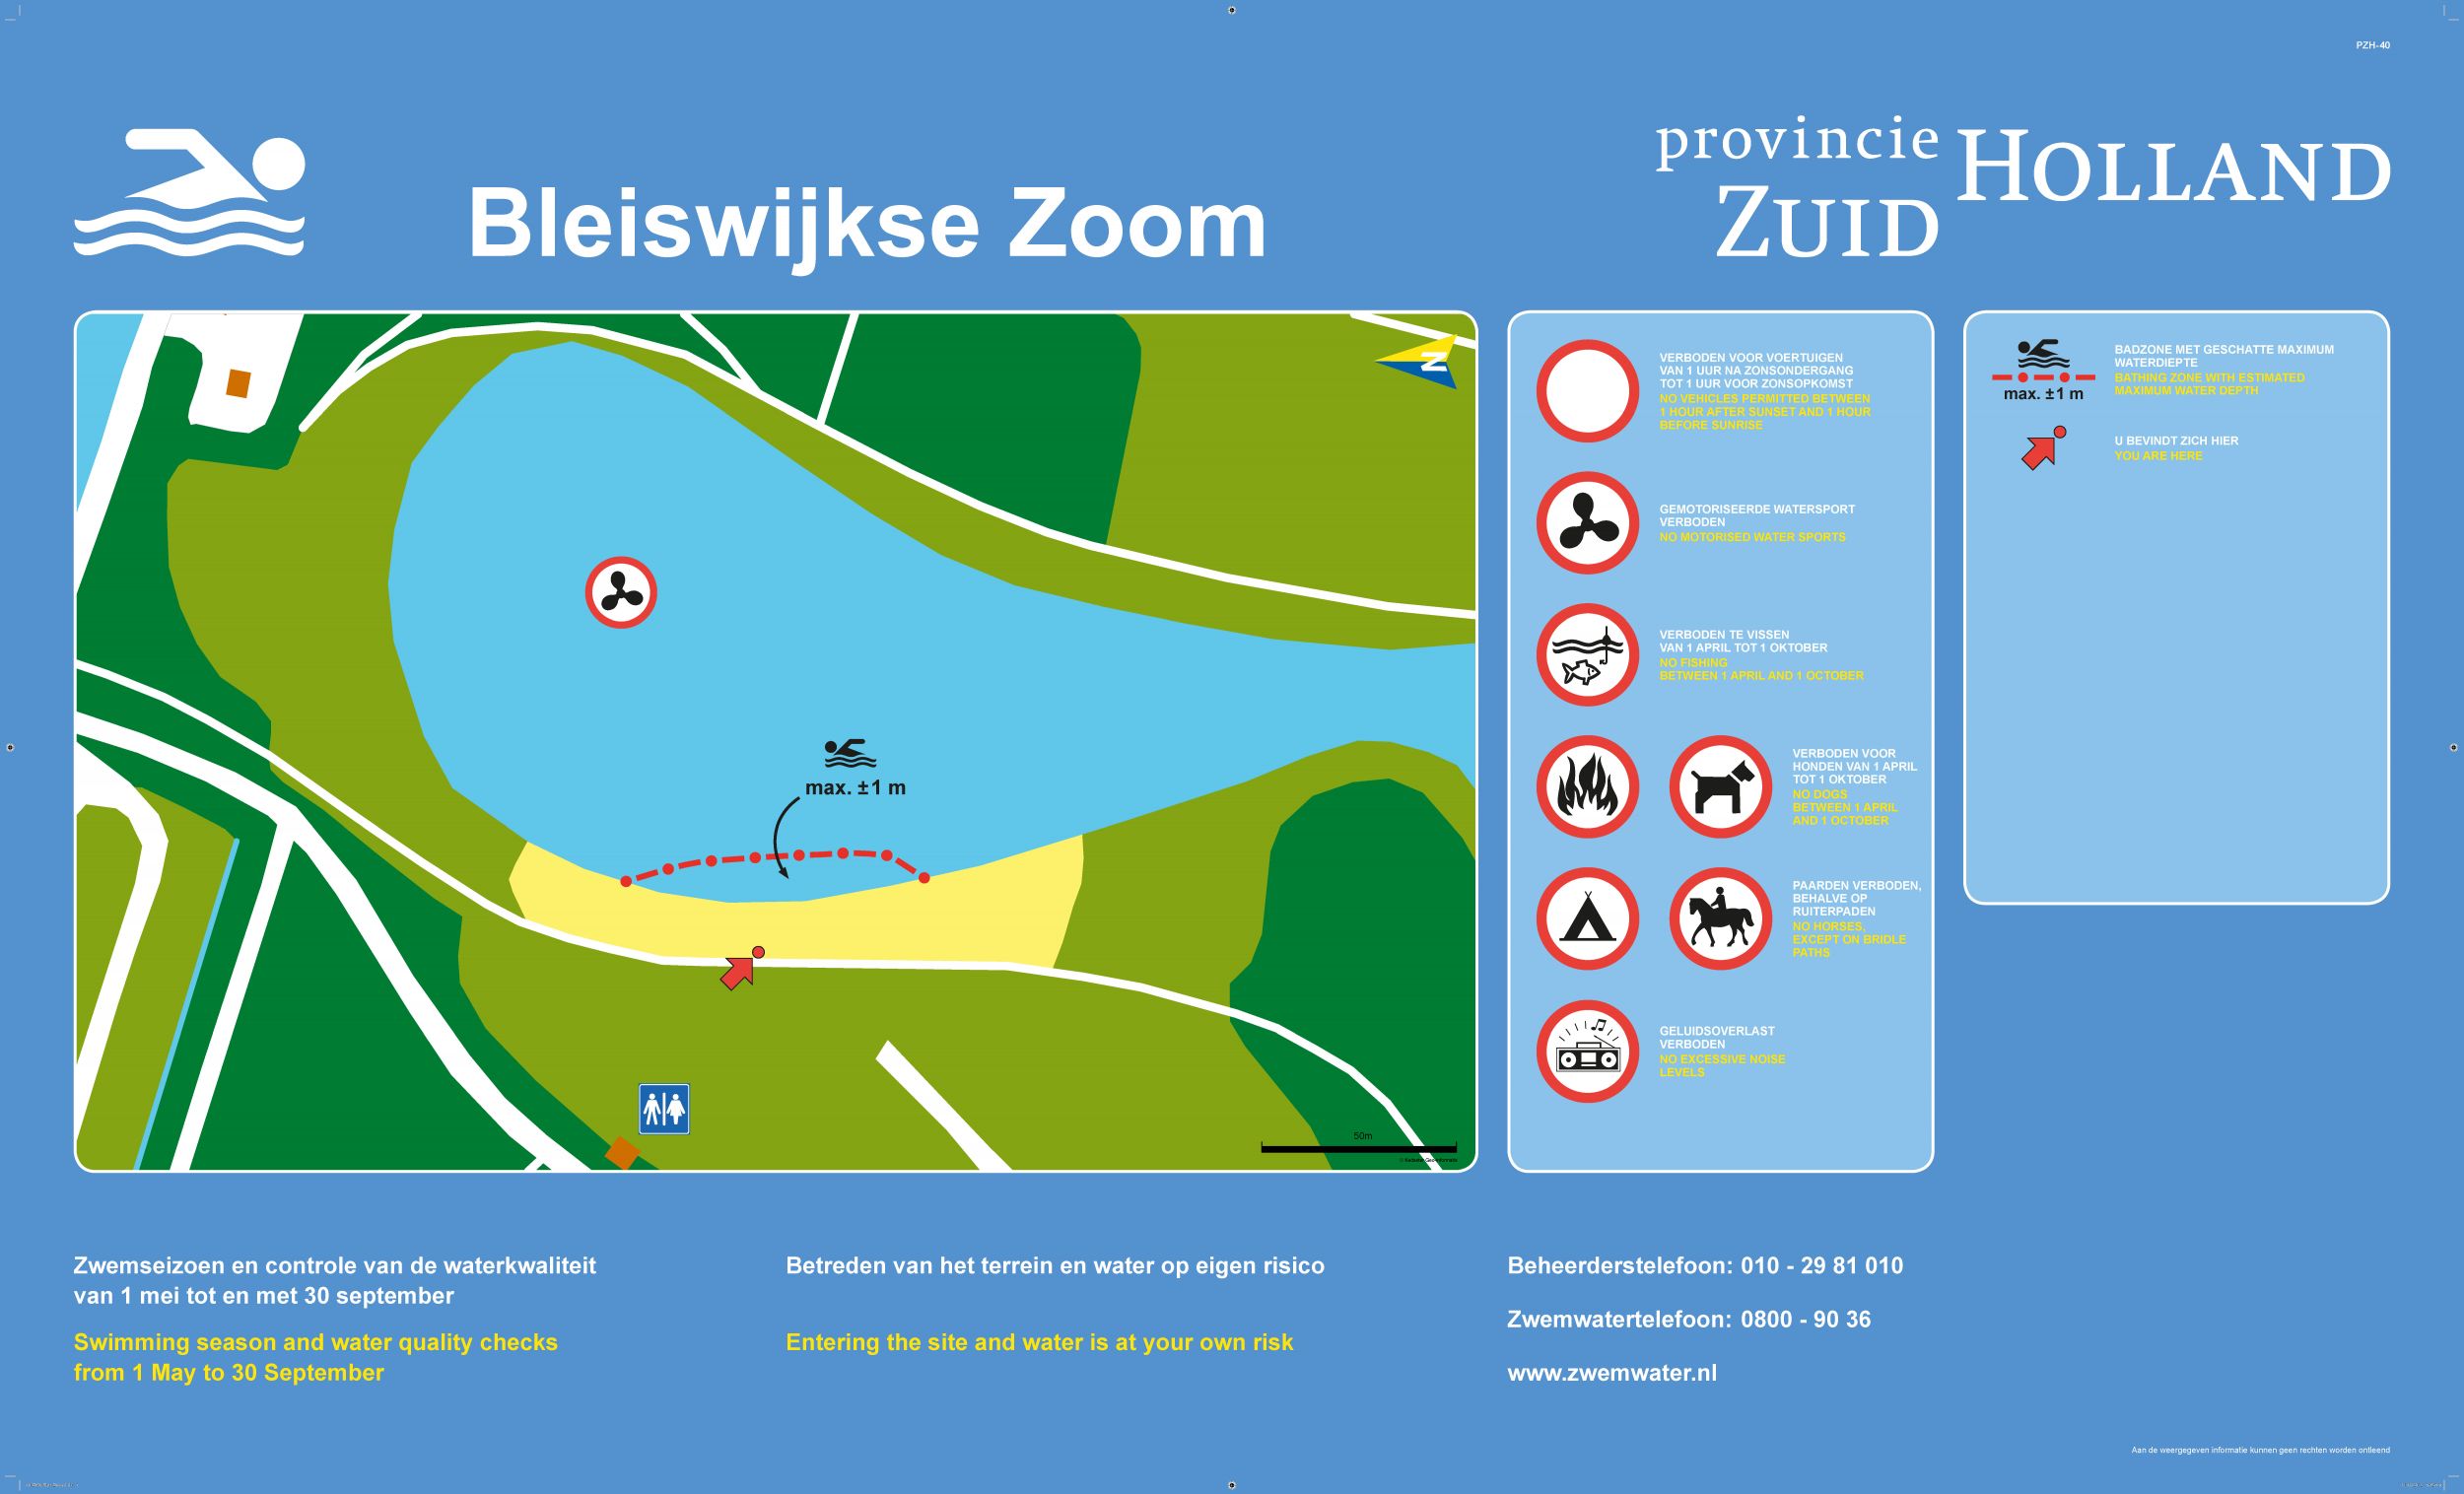 Het informatiebord bij zwemlocatie Bleiswijkse Zoom